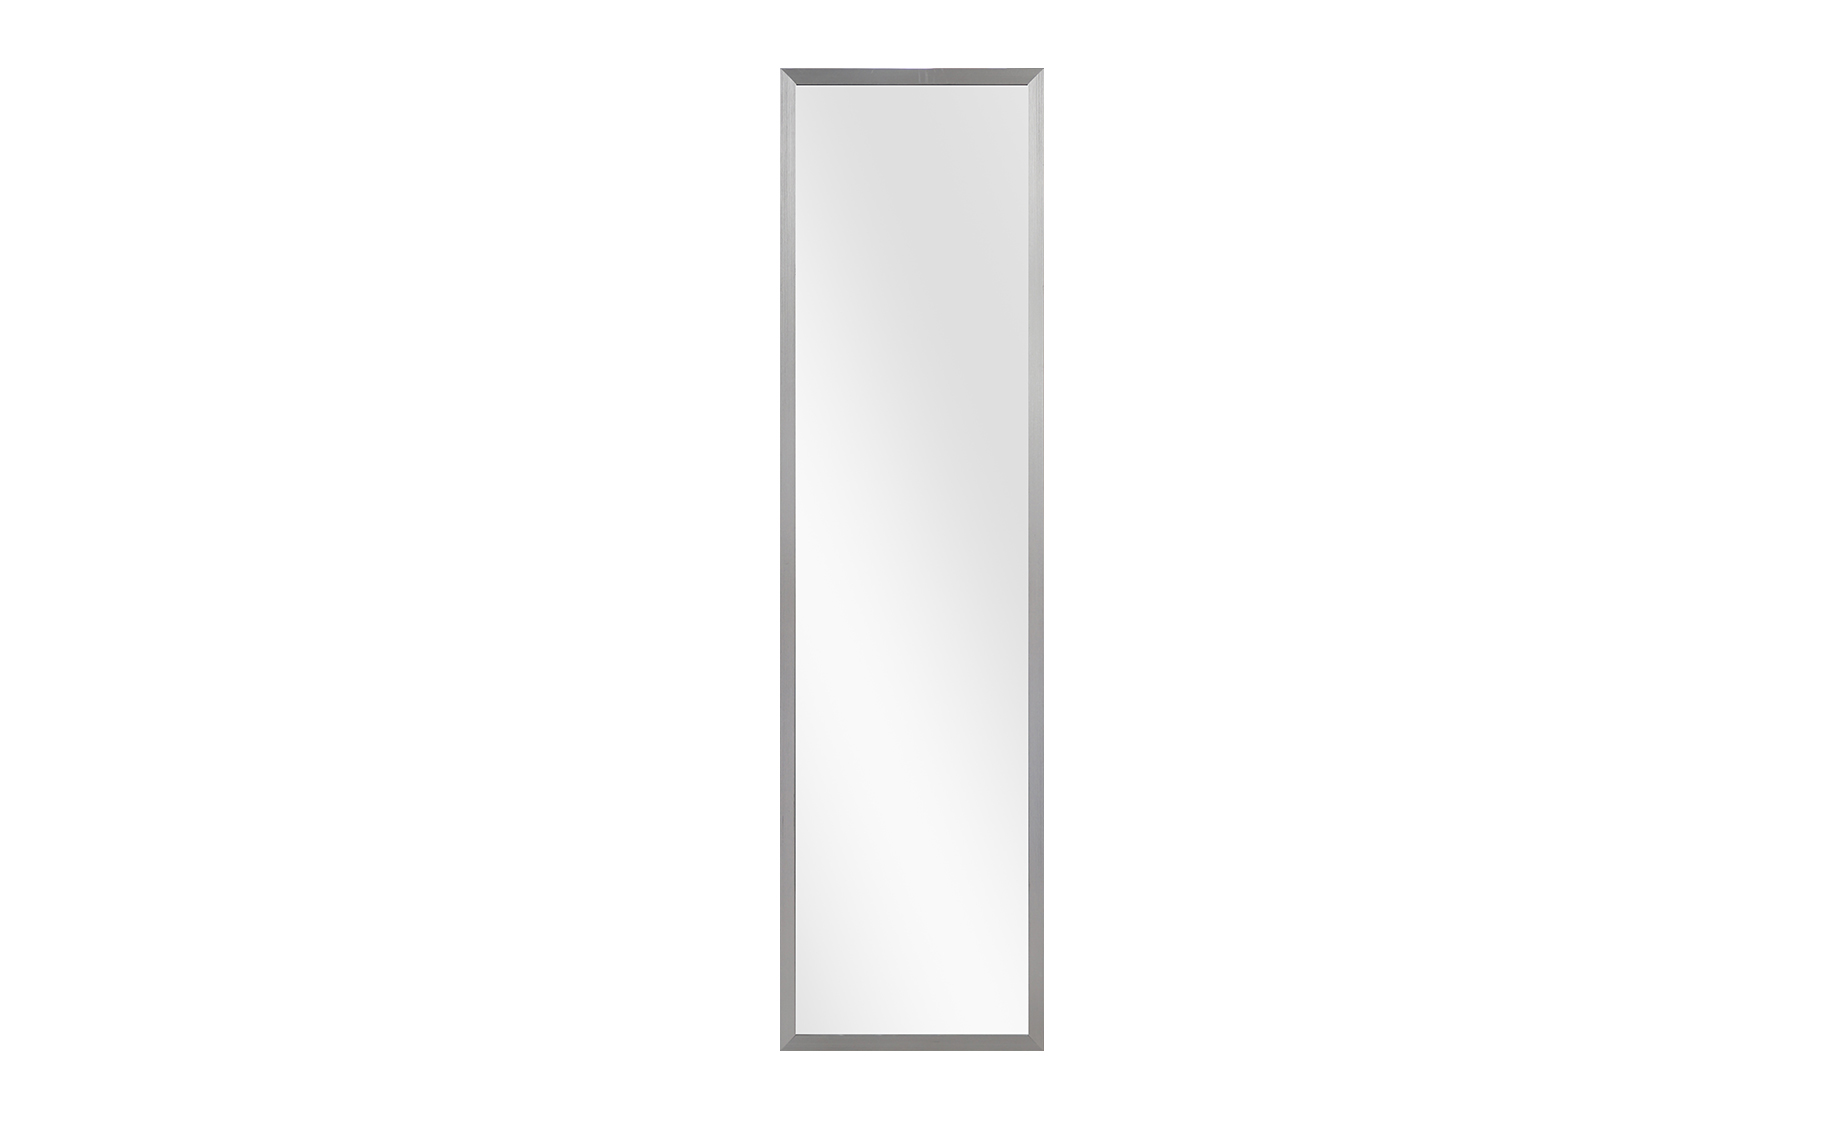 Zidno ogledalo Dona 34x124cm srebrno